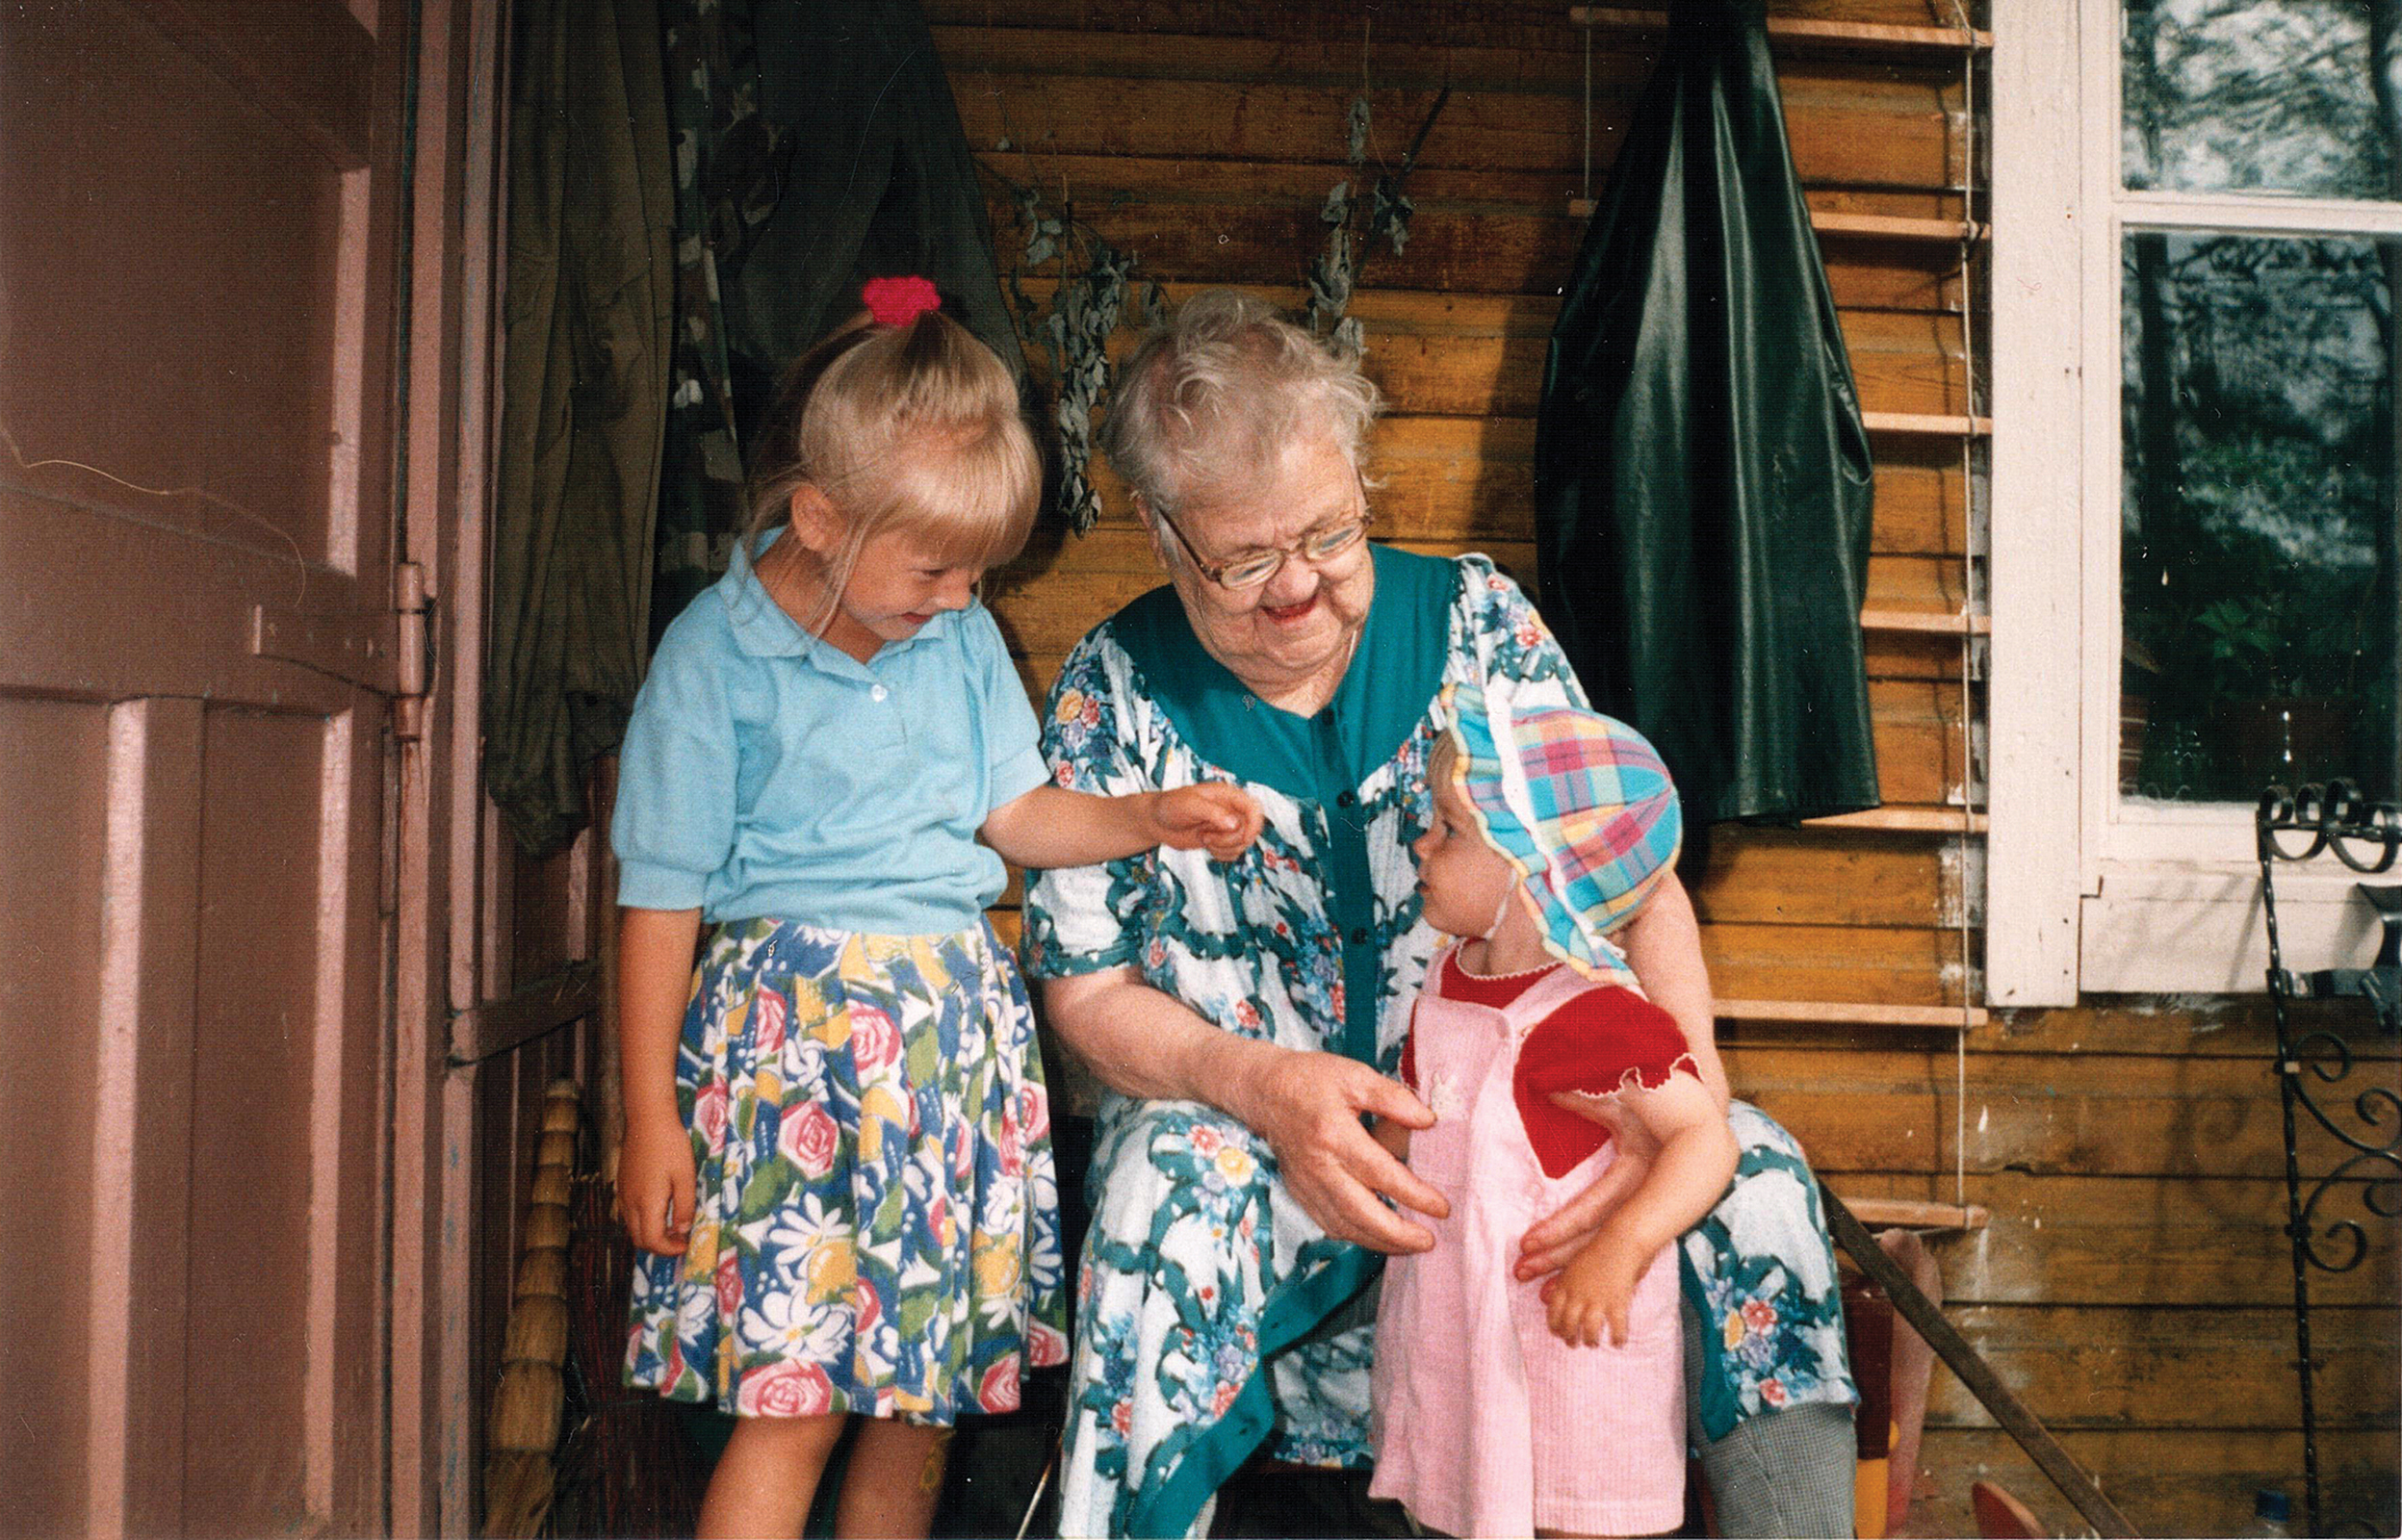 Vanha nainen istuu oven vierellä kaksi lapsenlapsenlastaan vierellään.